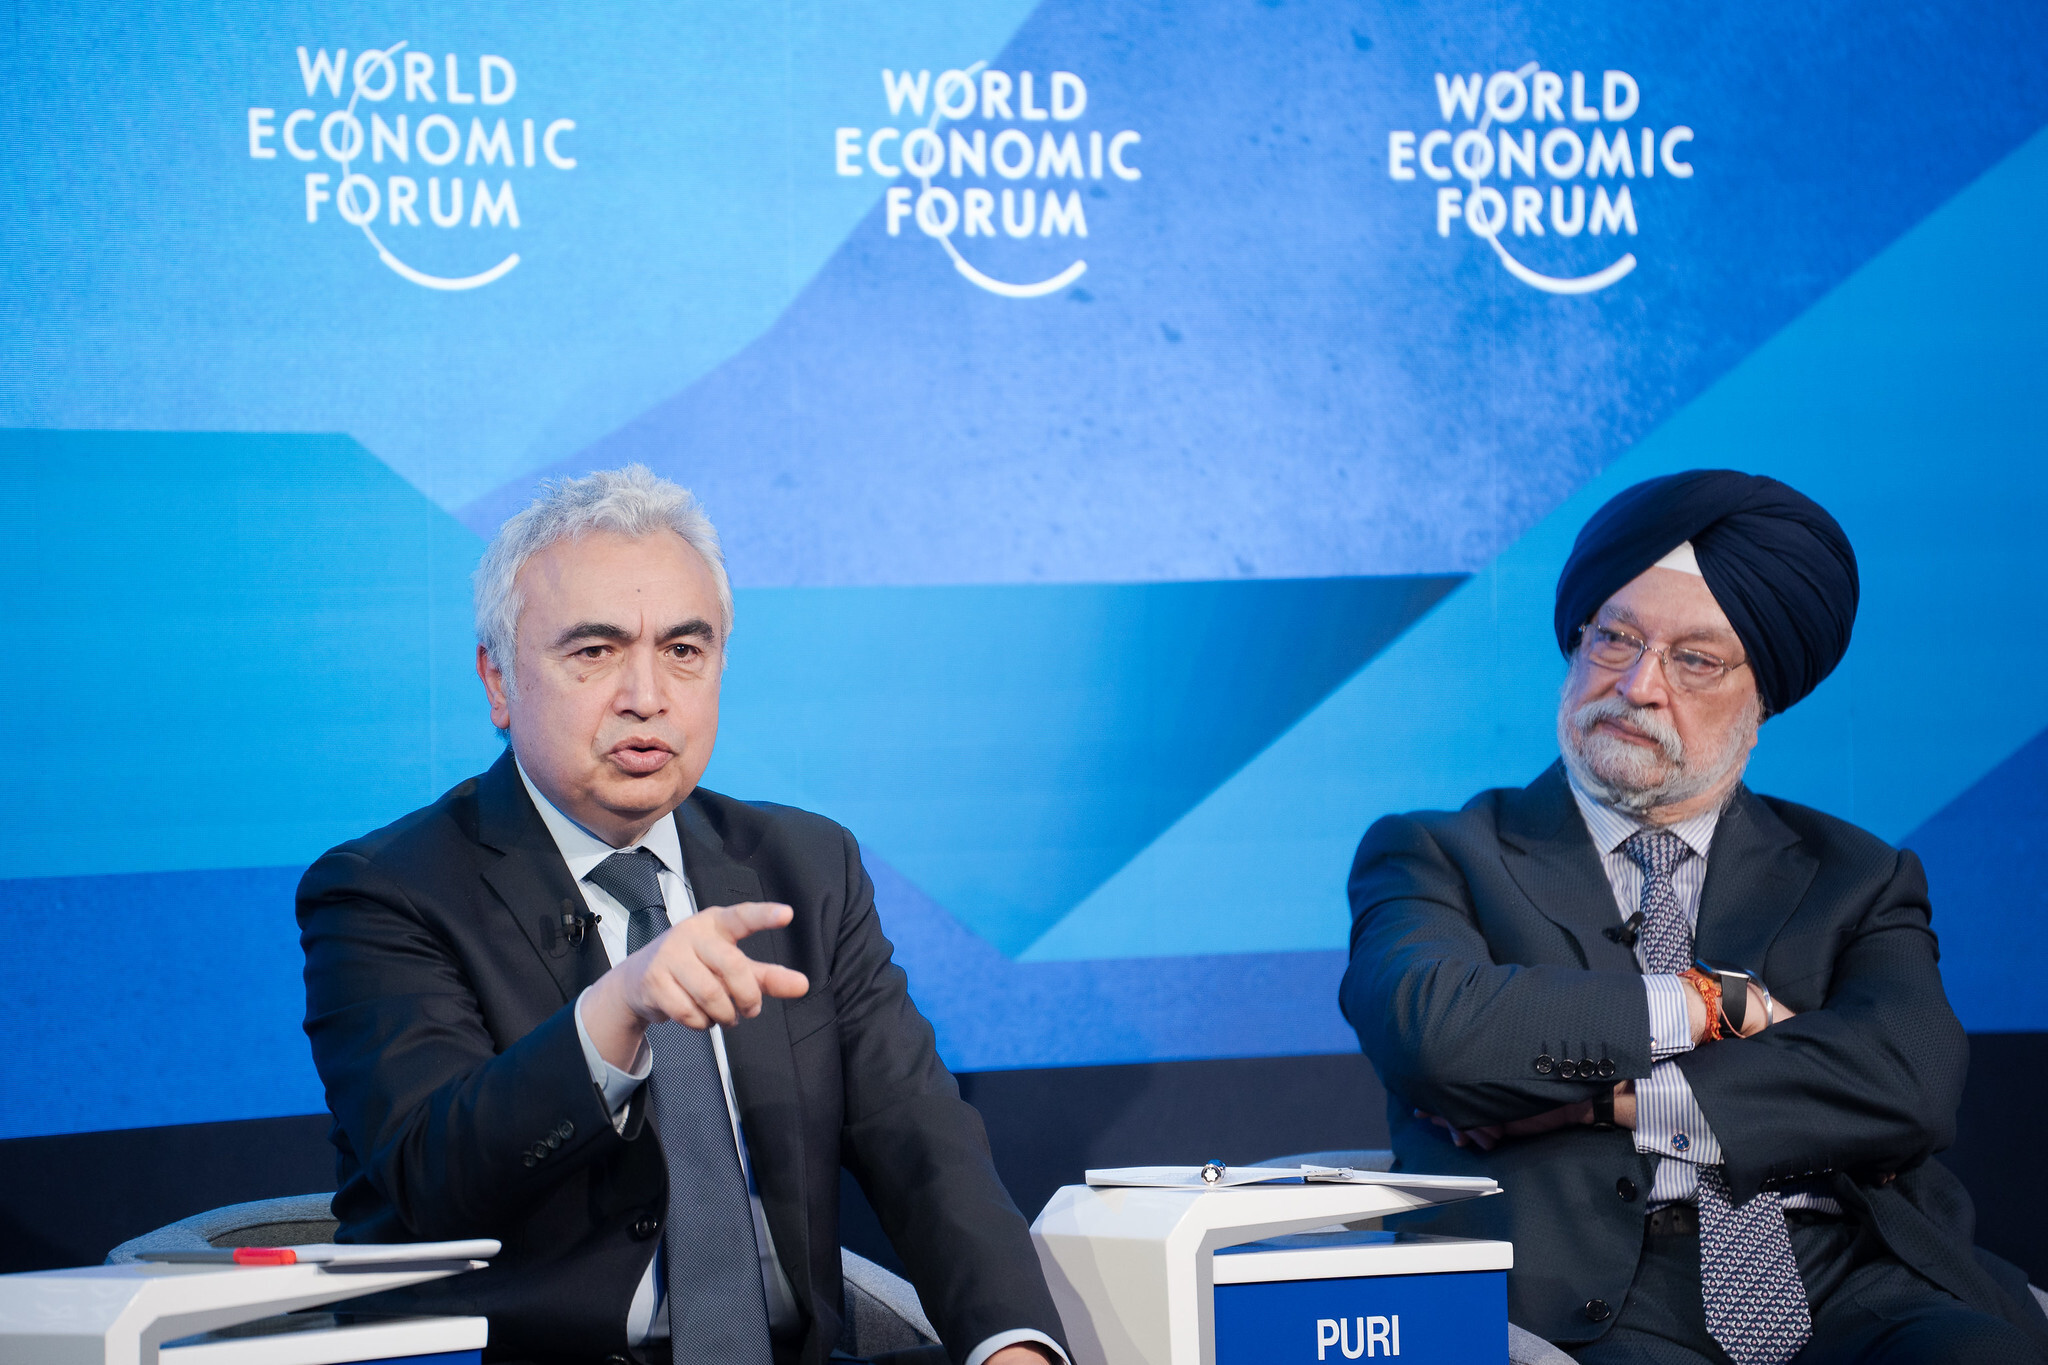 Fatih Birol e Hardeep Singh Puri discutem como enfrentar crise energética e crise climática, em Davos 2022 (Foto Manuel Lopez/Fórum Econômico Mundial)